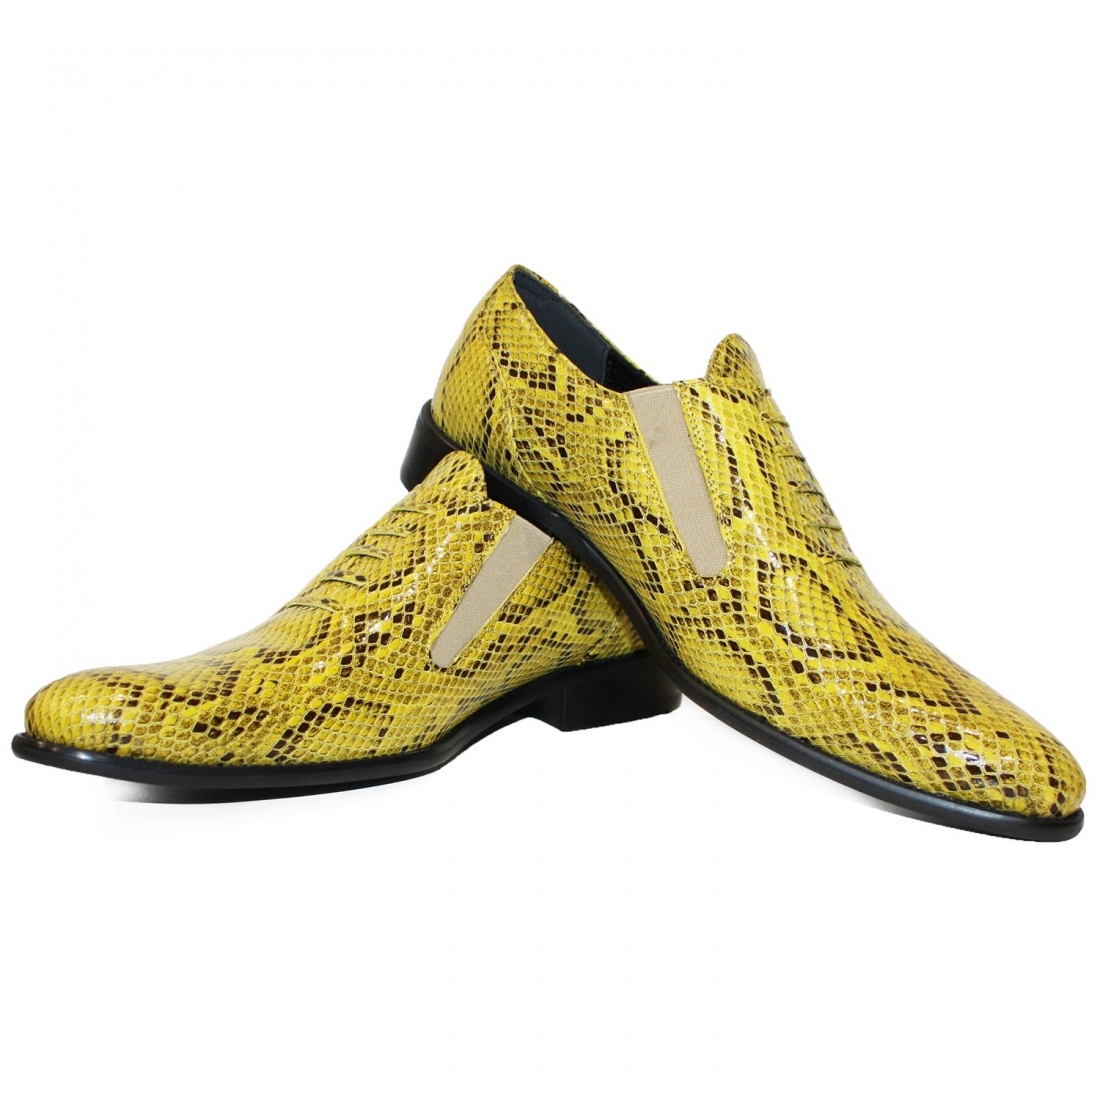 Modello Bucketto - Slipper - Handmade Colorful Italian Leather Shoes